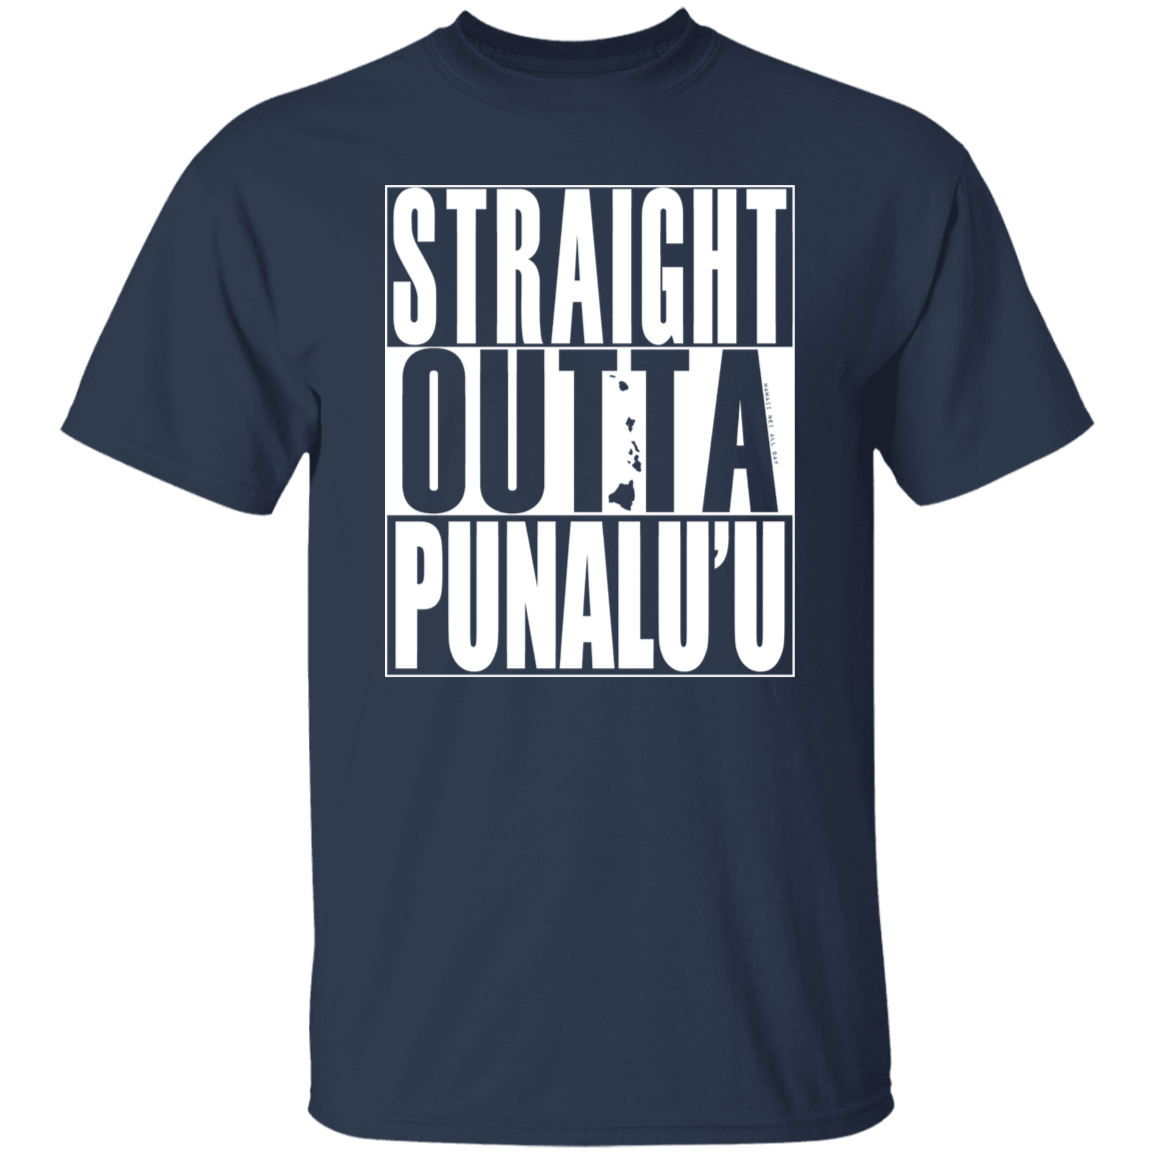 Straight Outta Punalu'u (white ink) T-Shirt